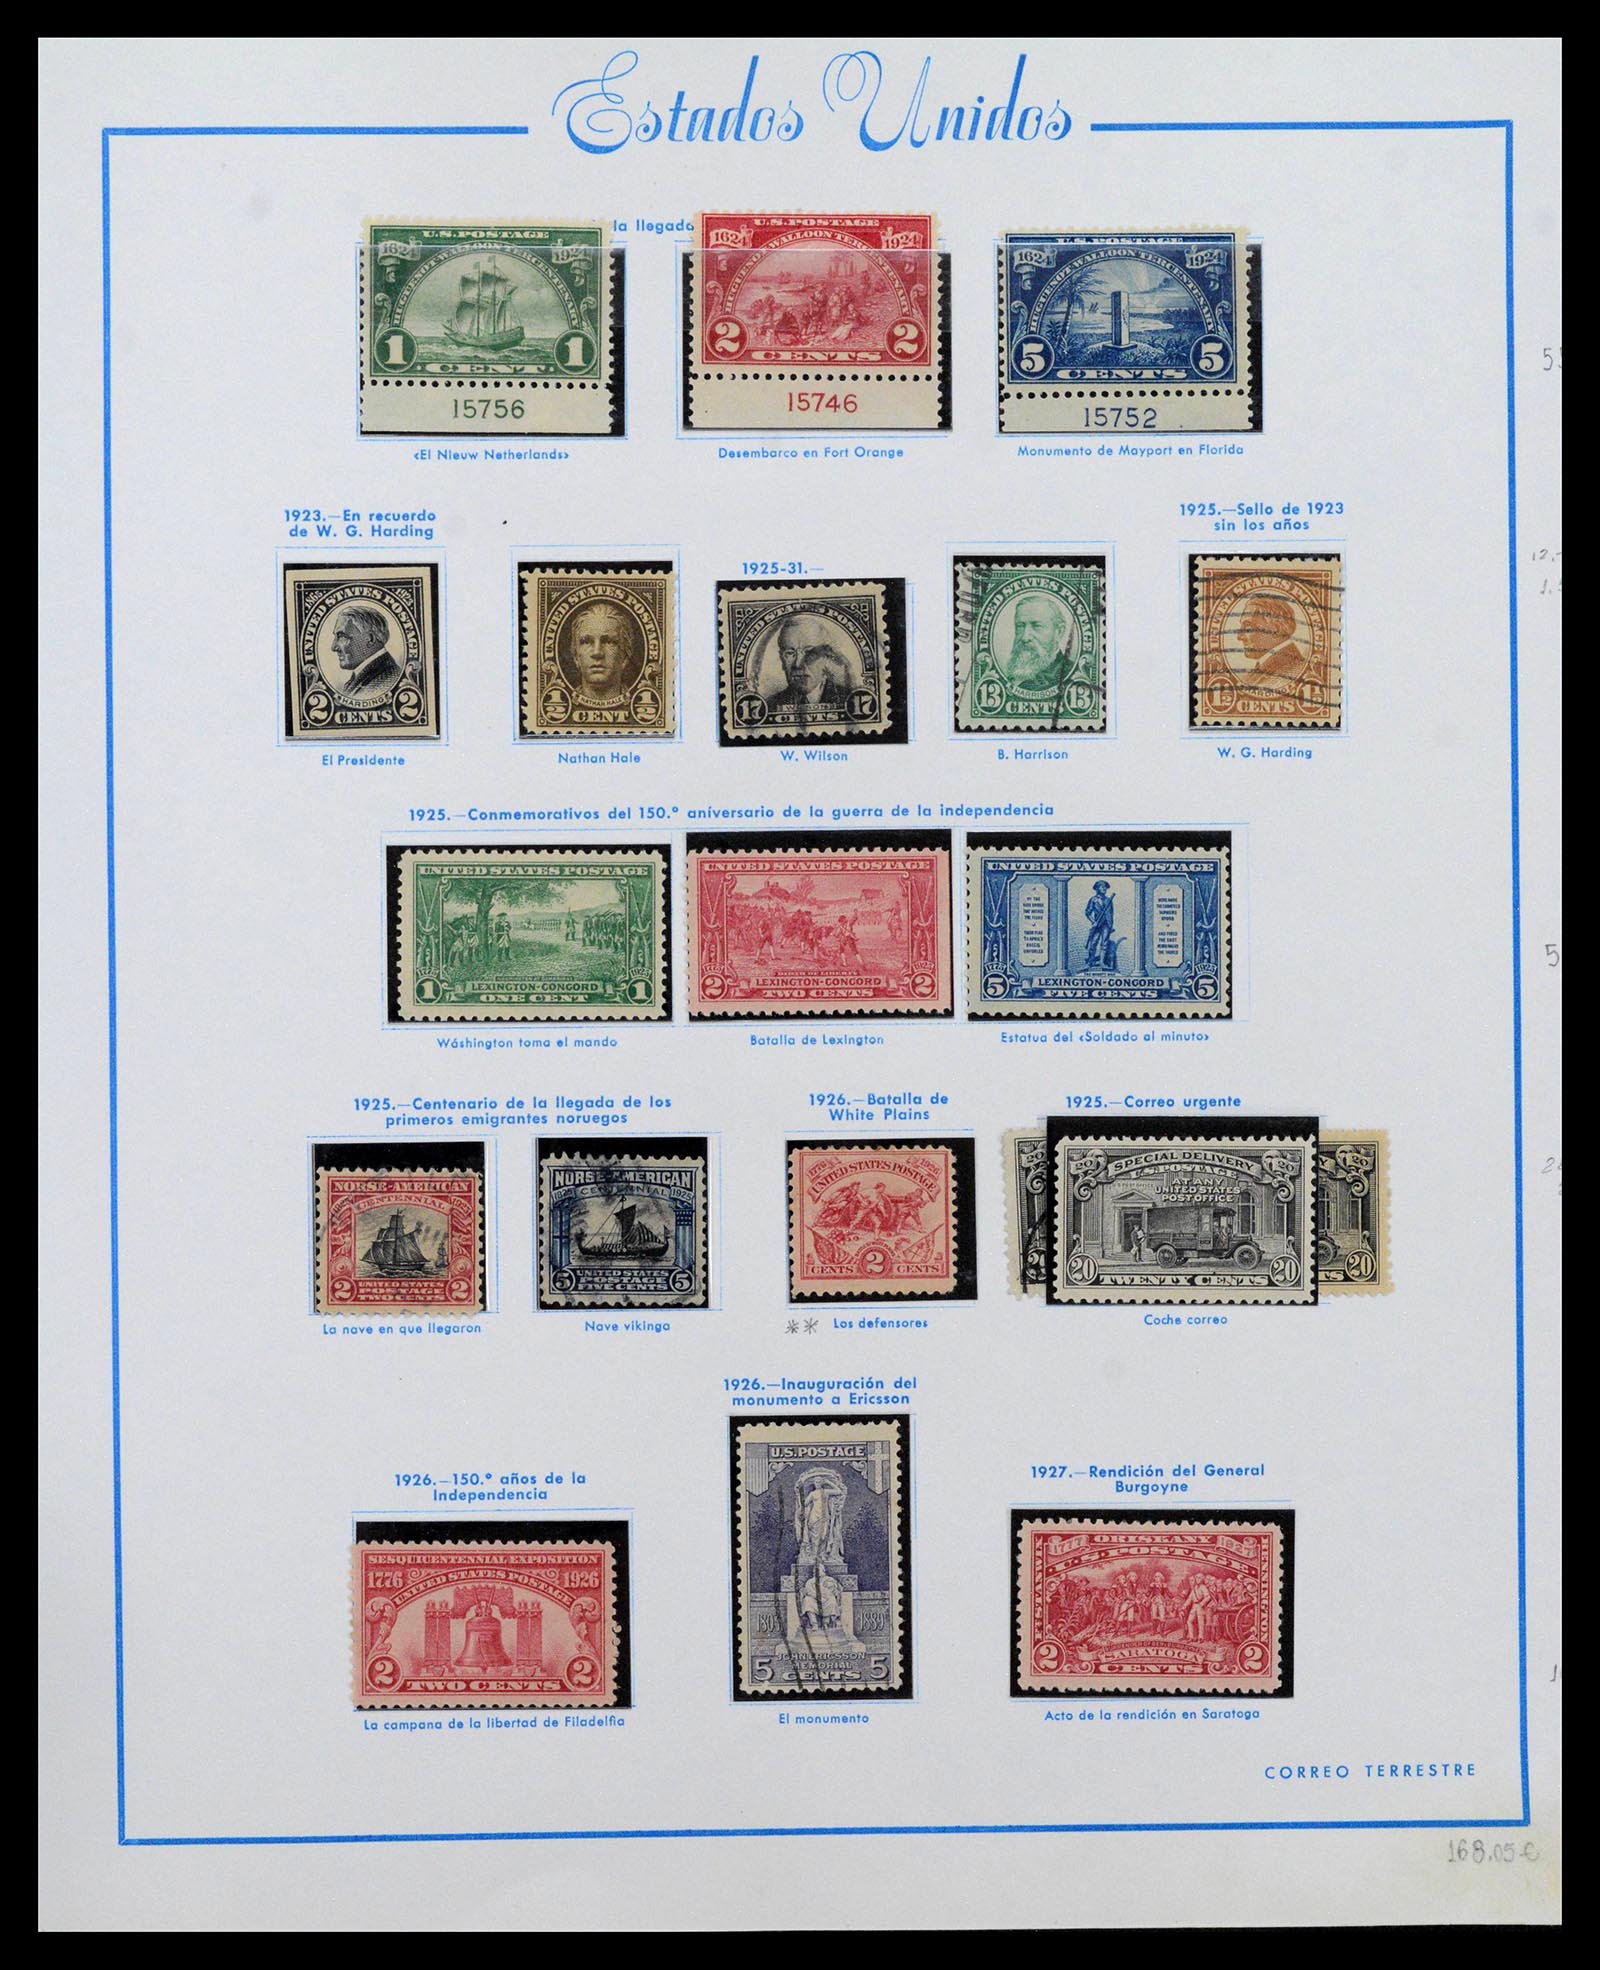 39190 0015 - Stamp collection 39190 USA 1851-1975.